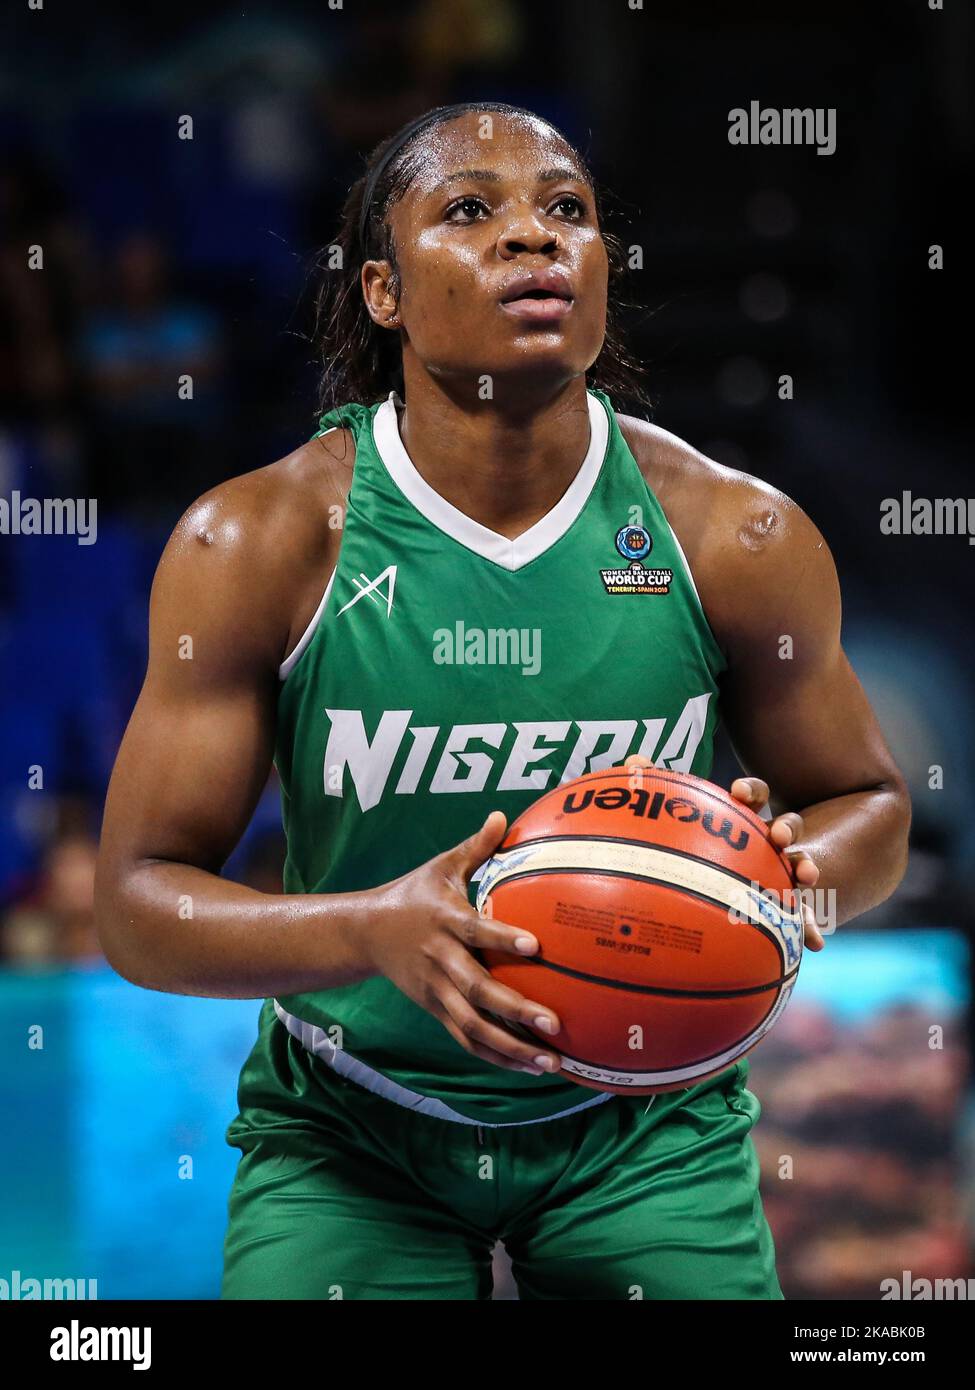 Espagne, Ténérife, 28 septembre 2018: Sarah Imovbioh, joueuse de basket-ball nigériane, lors de la coupe du monde de basket-ball féminin de la FIBA en Espagne. Banque D'Images